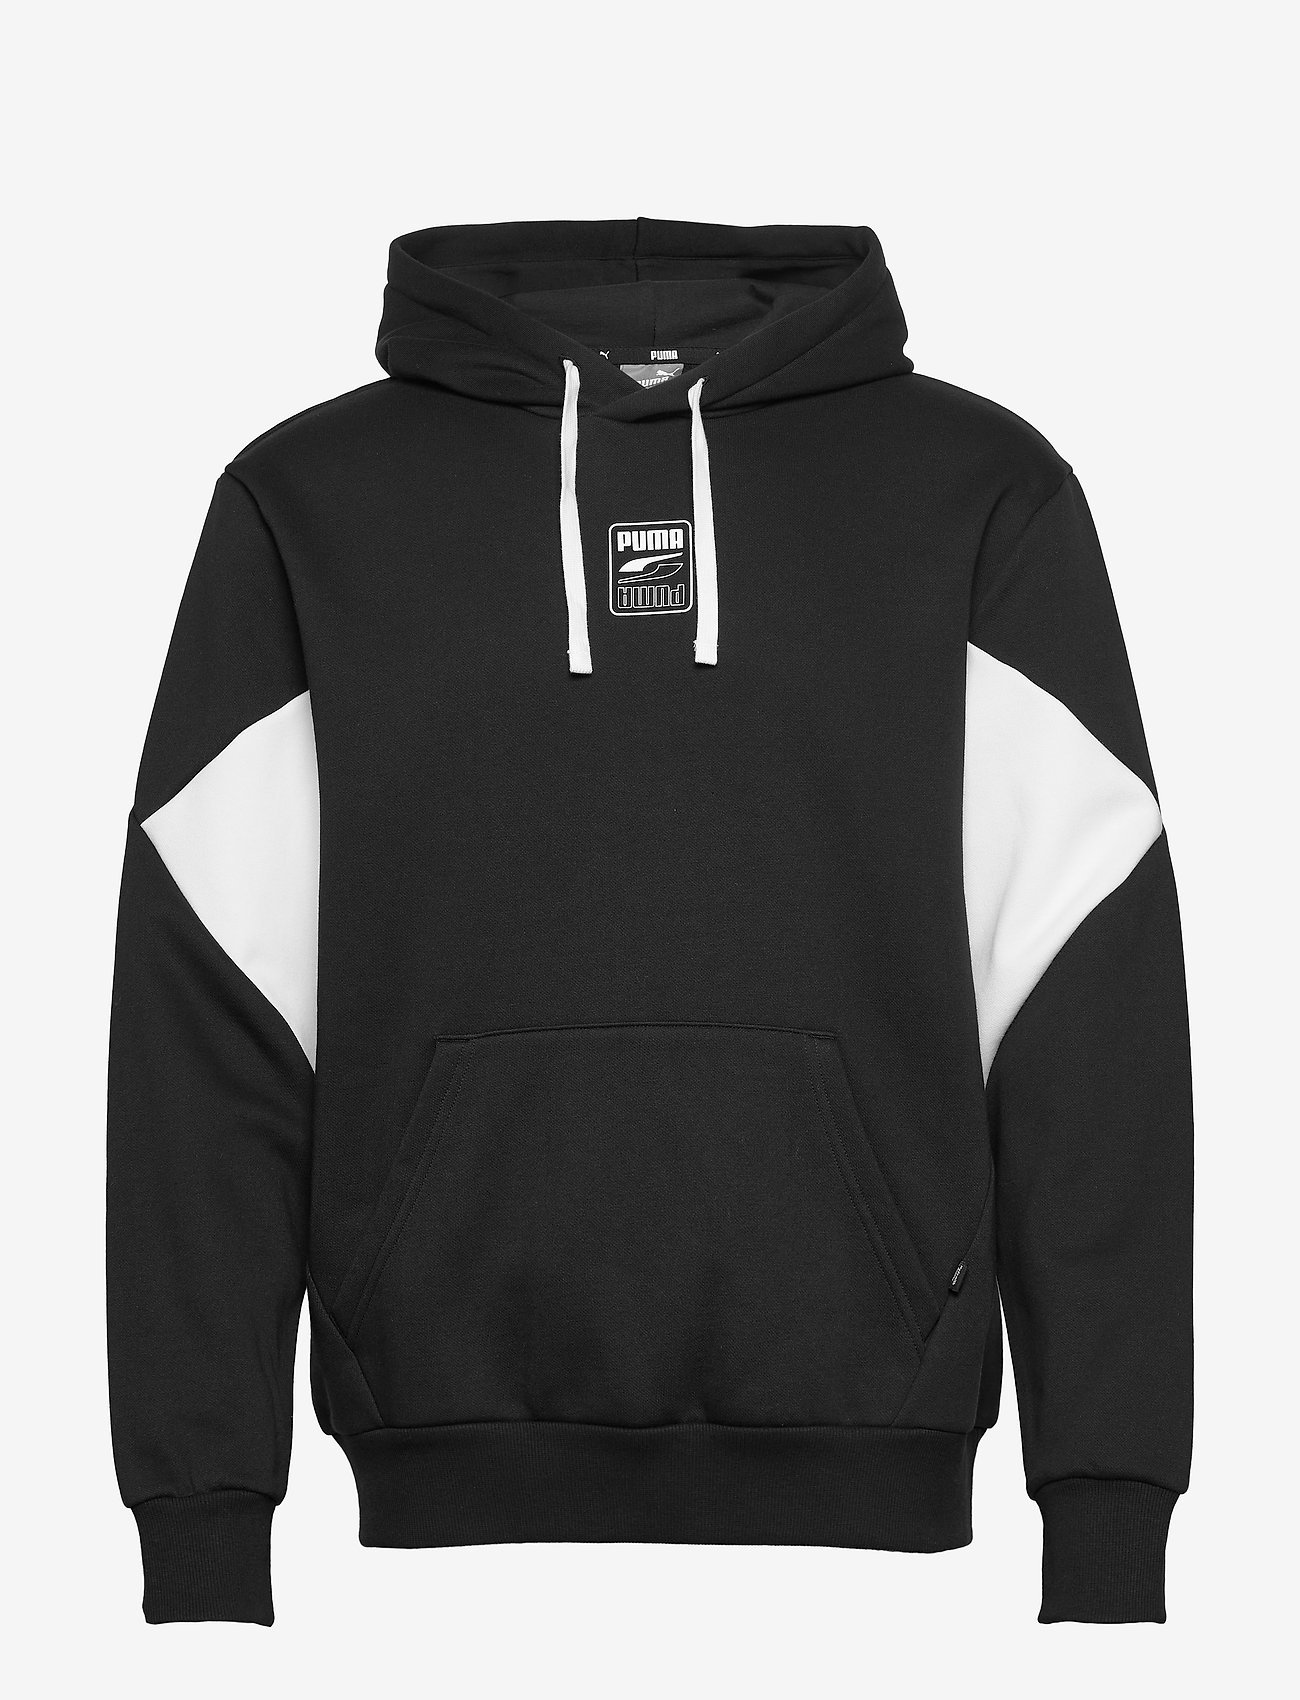 puma small logo hoodie